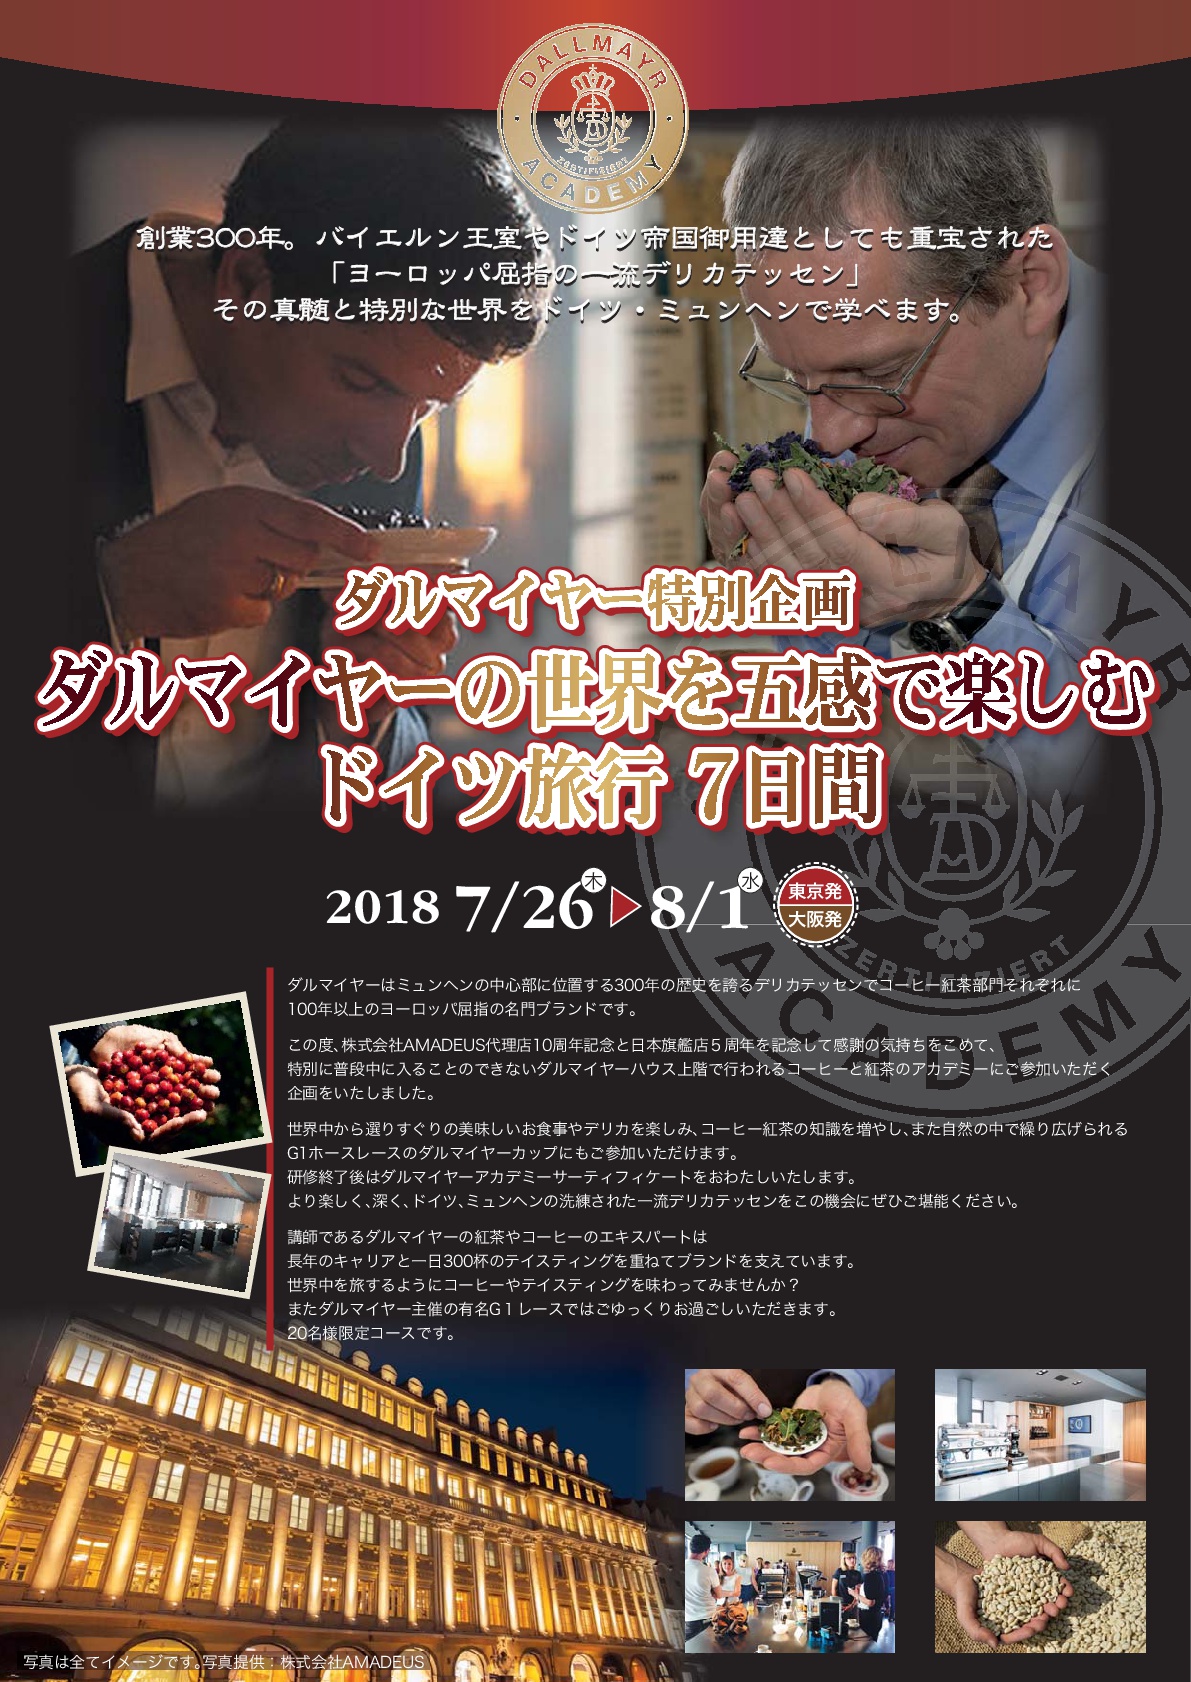 日本旅行、伝統ドイツ・ダルマイヤーの世界を体験するツアーを発売、出発日限定で